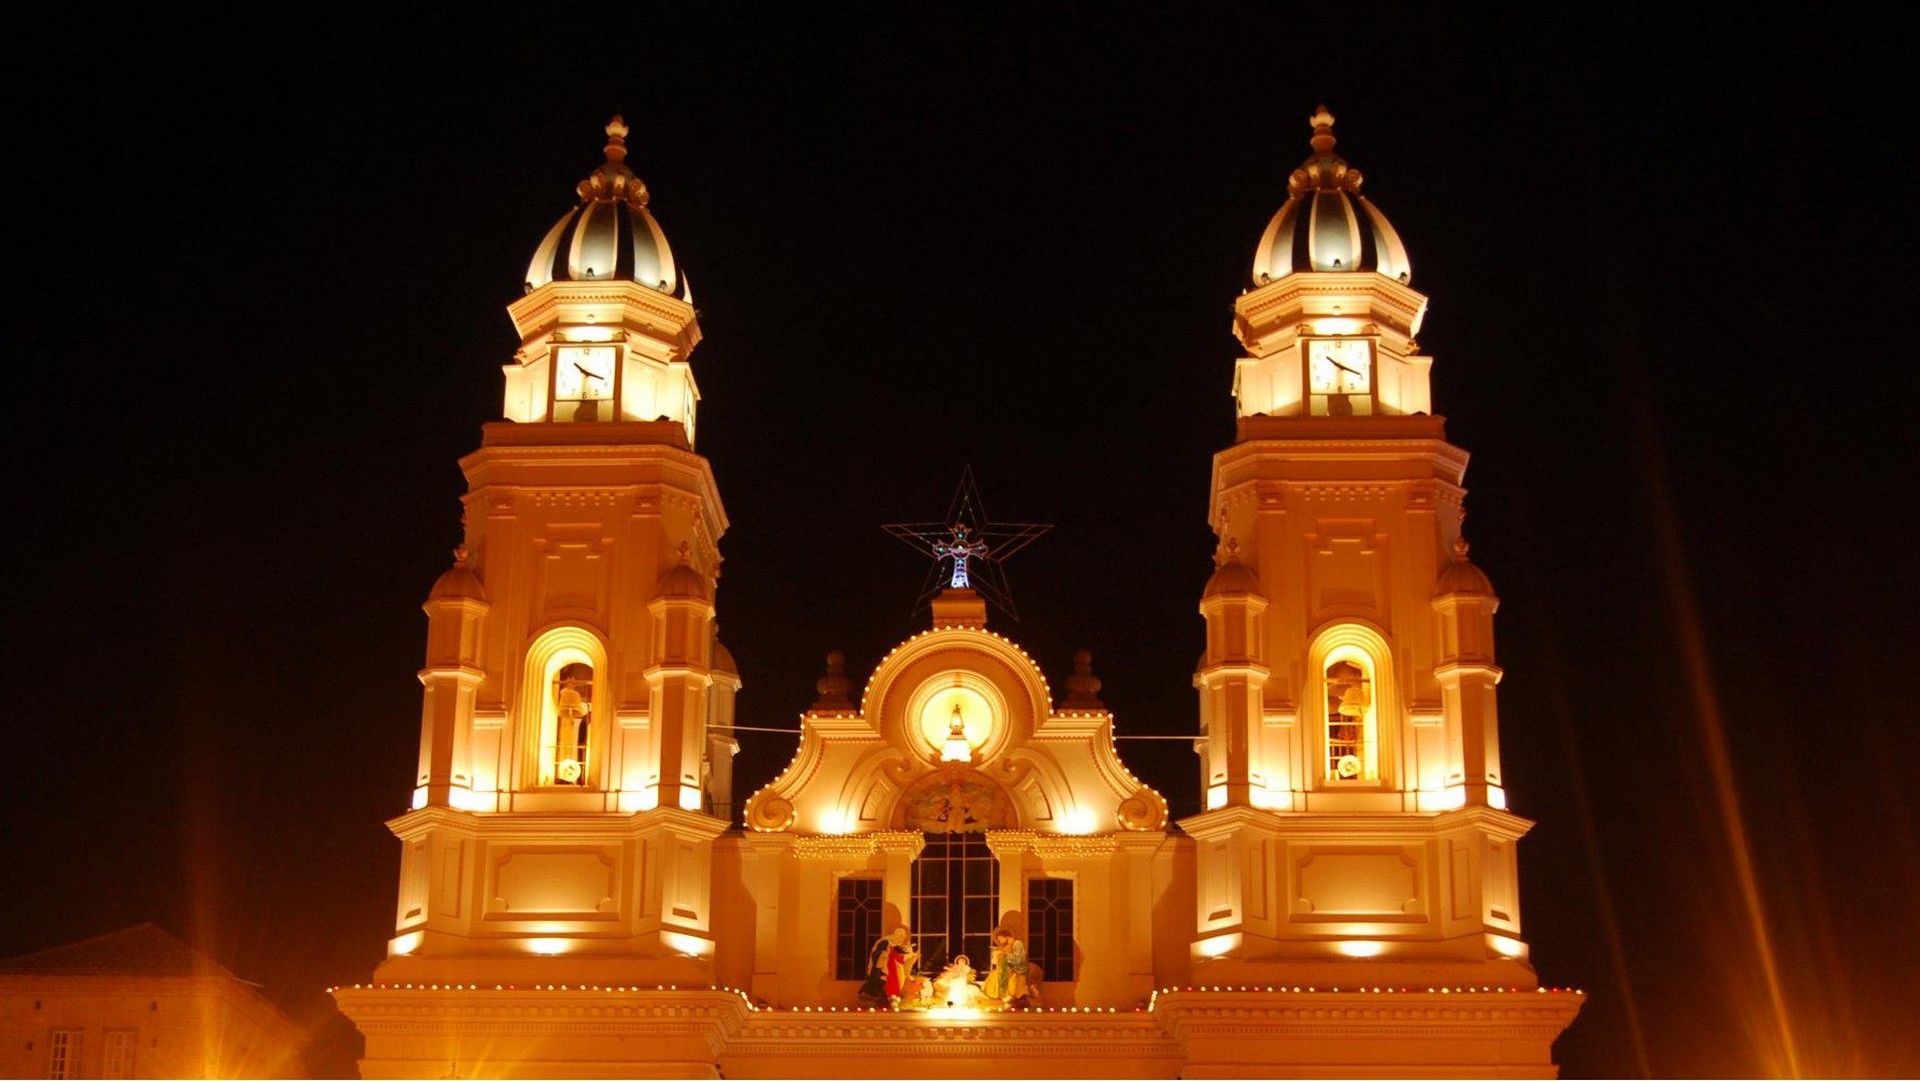 La basilique du sanctuaire marial d'El Quinche, en Equateur (photo wikimedia commons Jonathan paredes CC BY-SA 3.0)